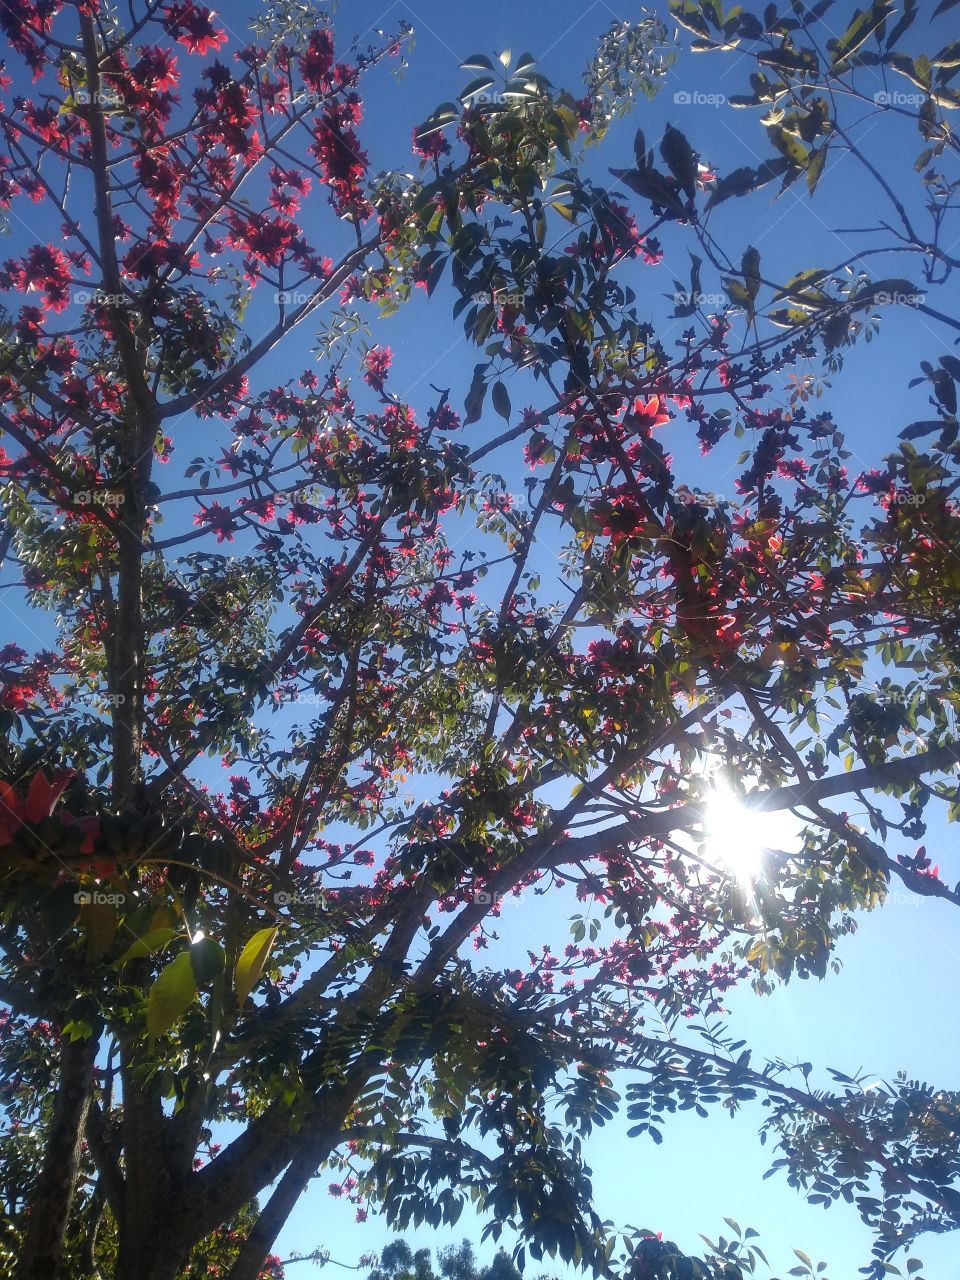 Beautiful tree with red flowers.../ Linda árvore de flores vermelhas...